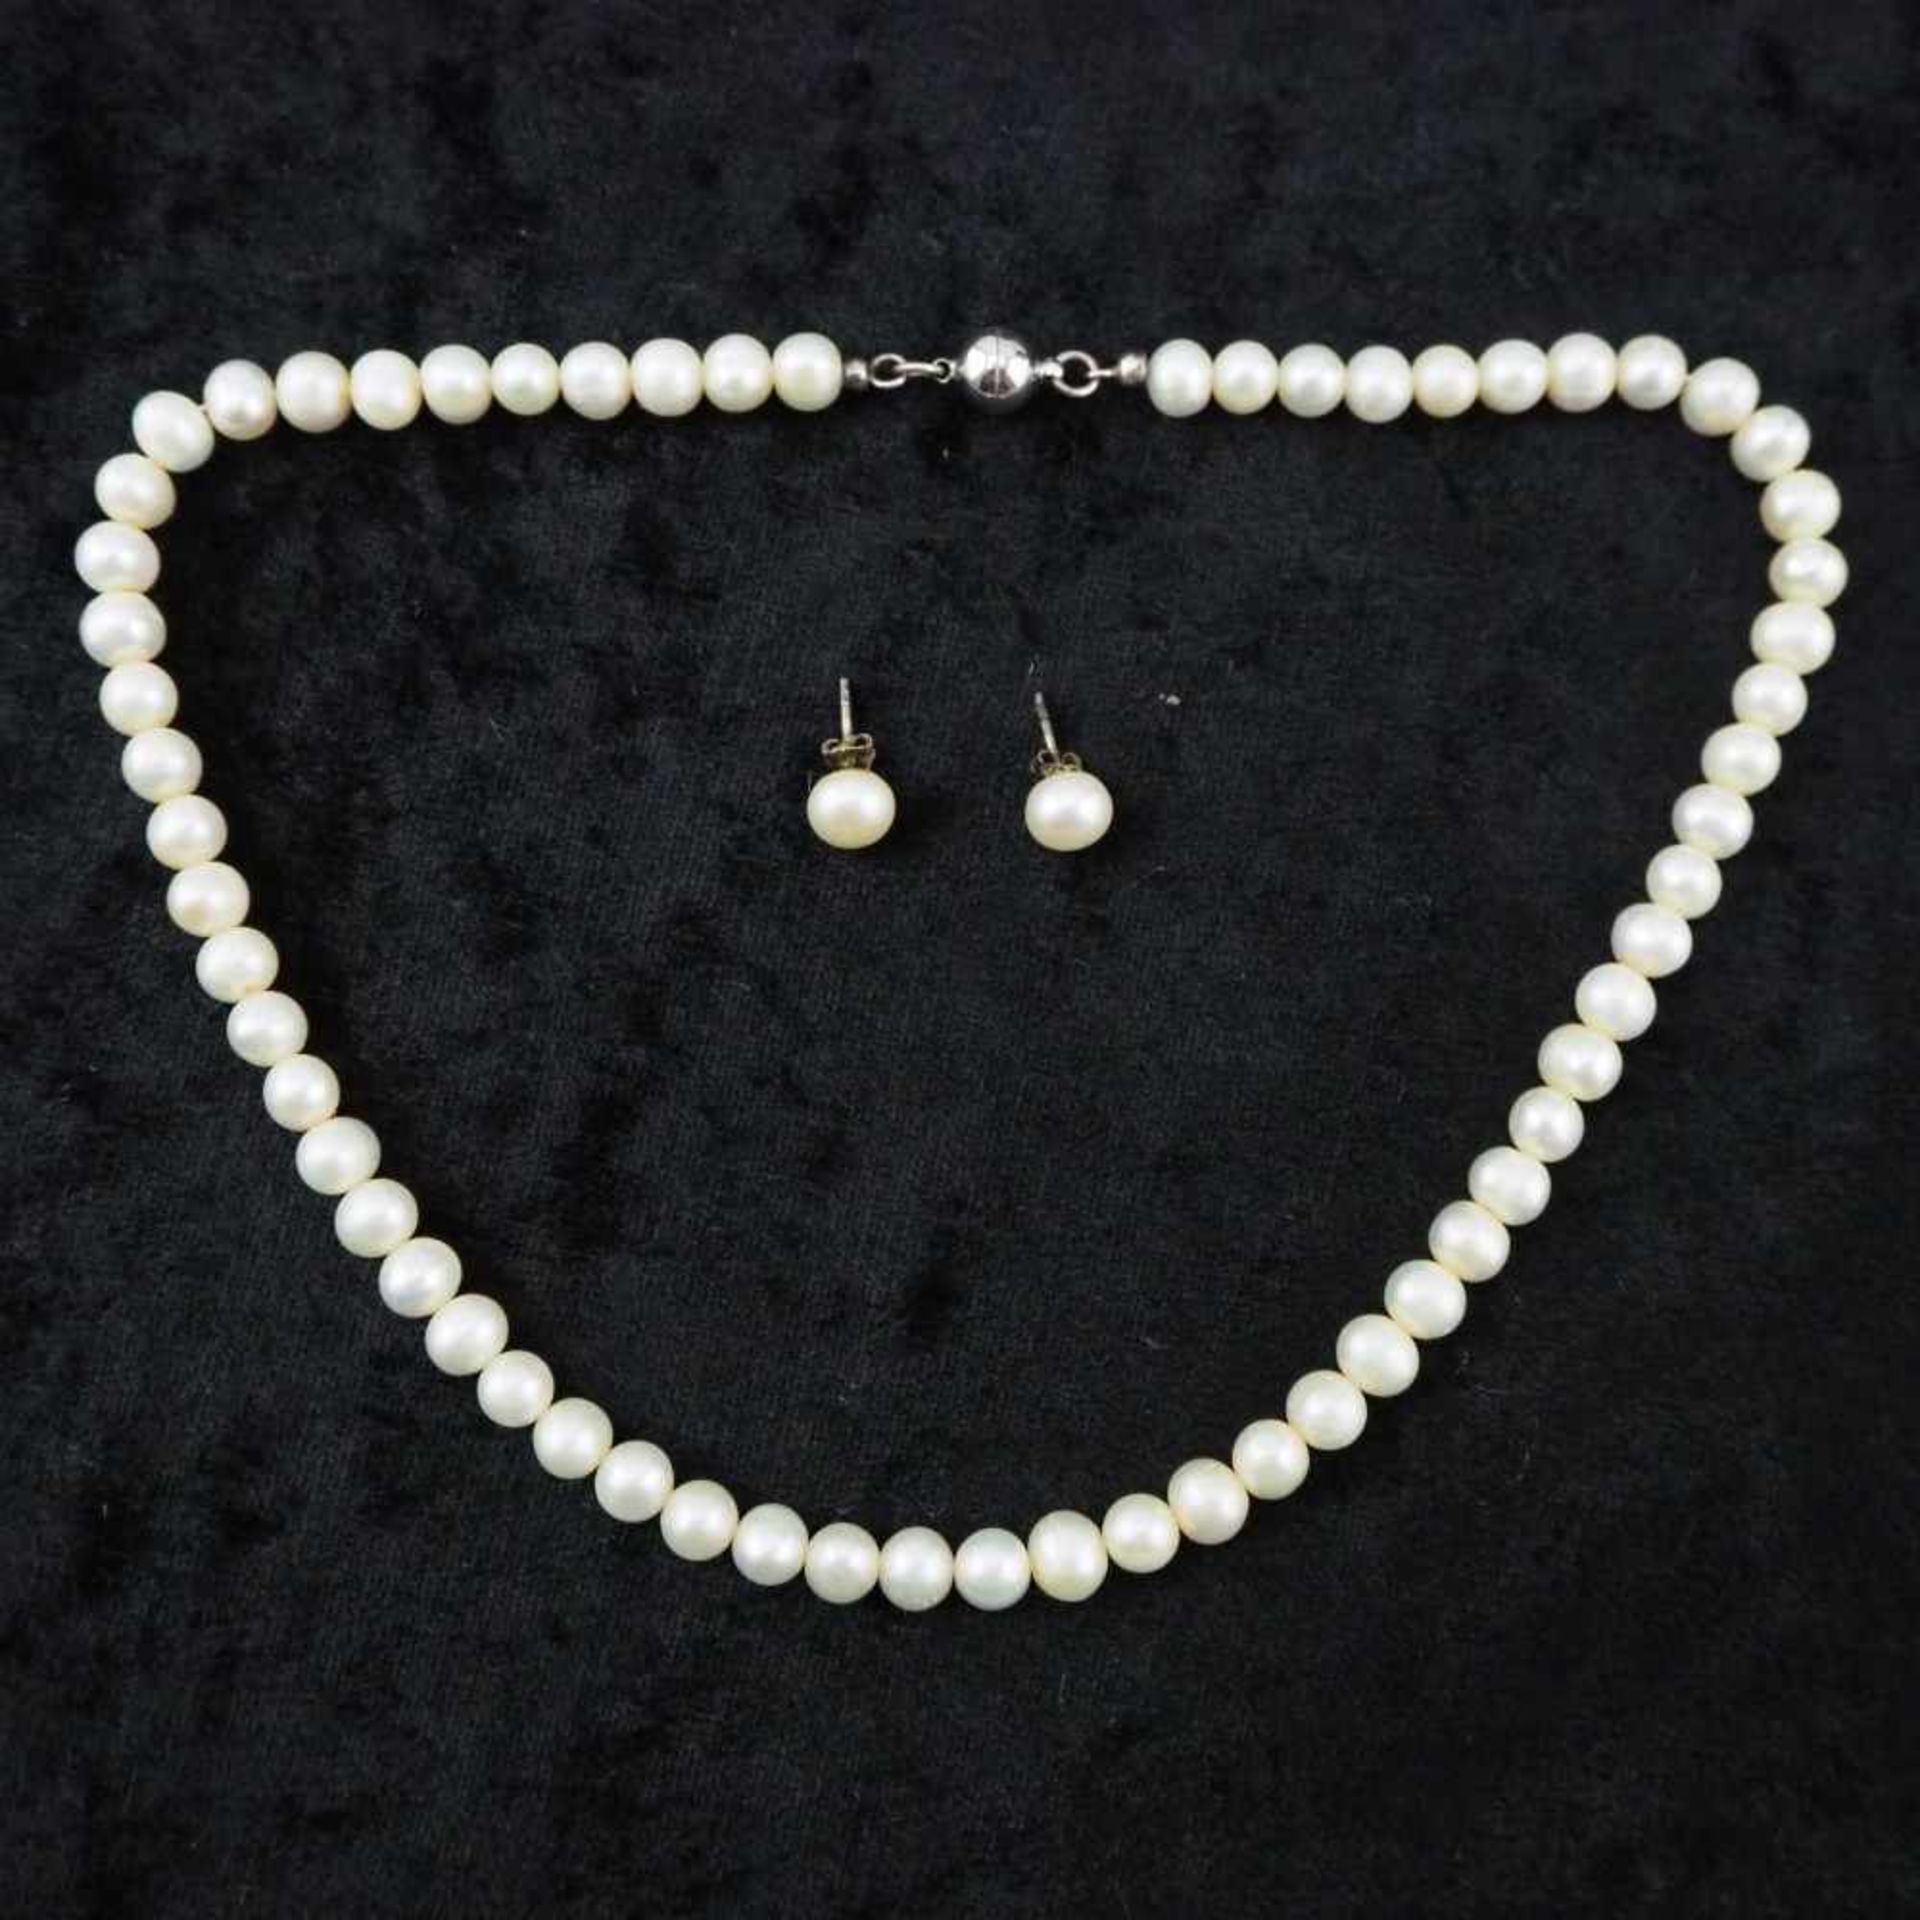 Set Perlenkette mit Ohrringen32,3g Gesamtgewicht, 43cm Gesamtlänge, guter GebrauchtzustandSet of